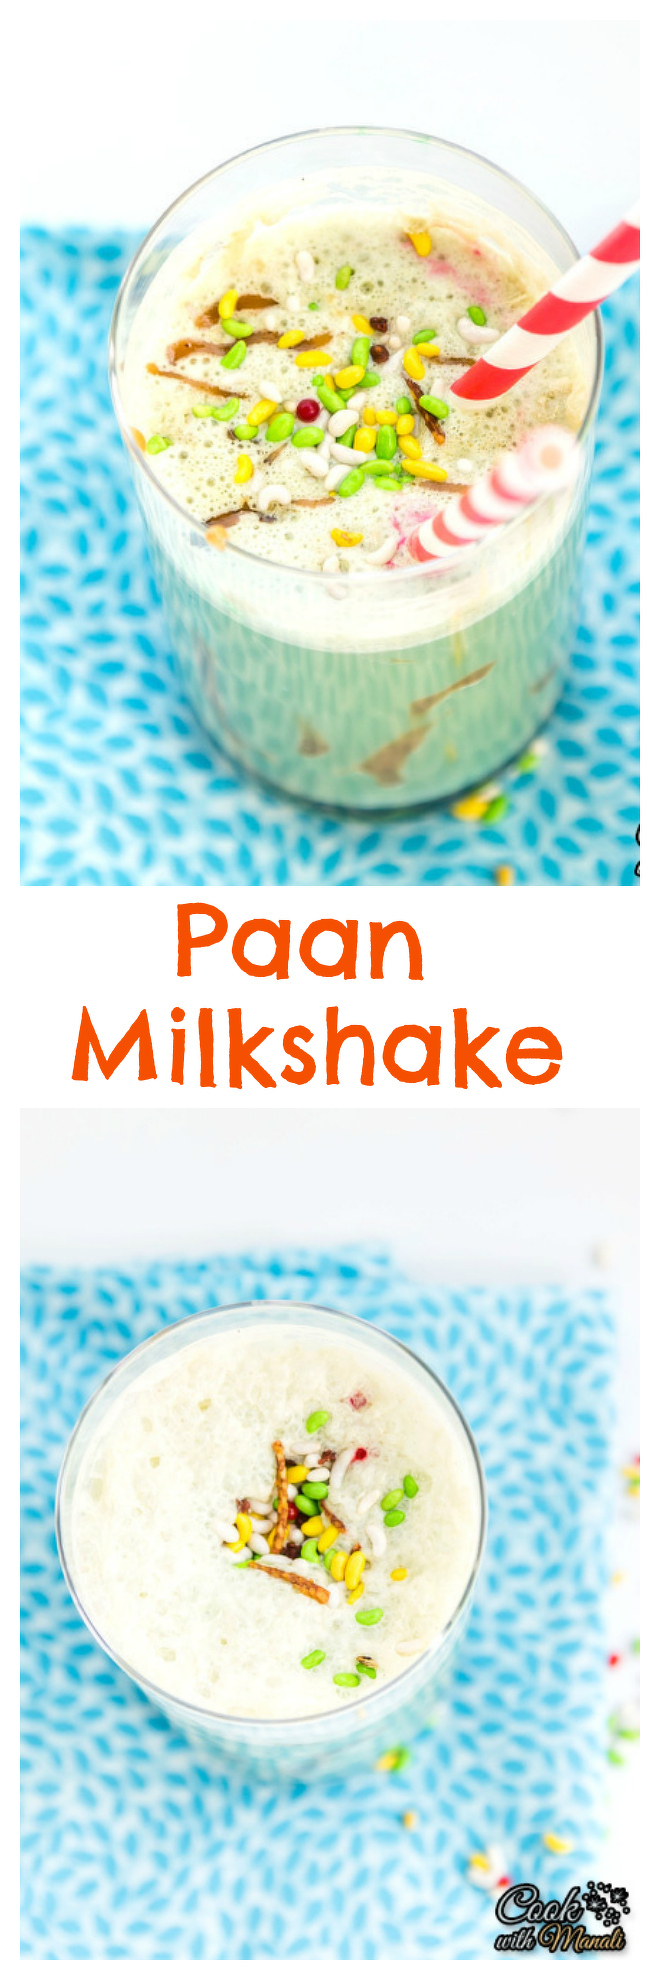 Paan Milkshake Collage-nocwm